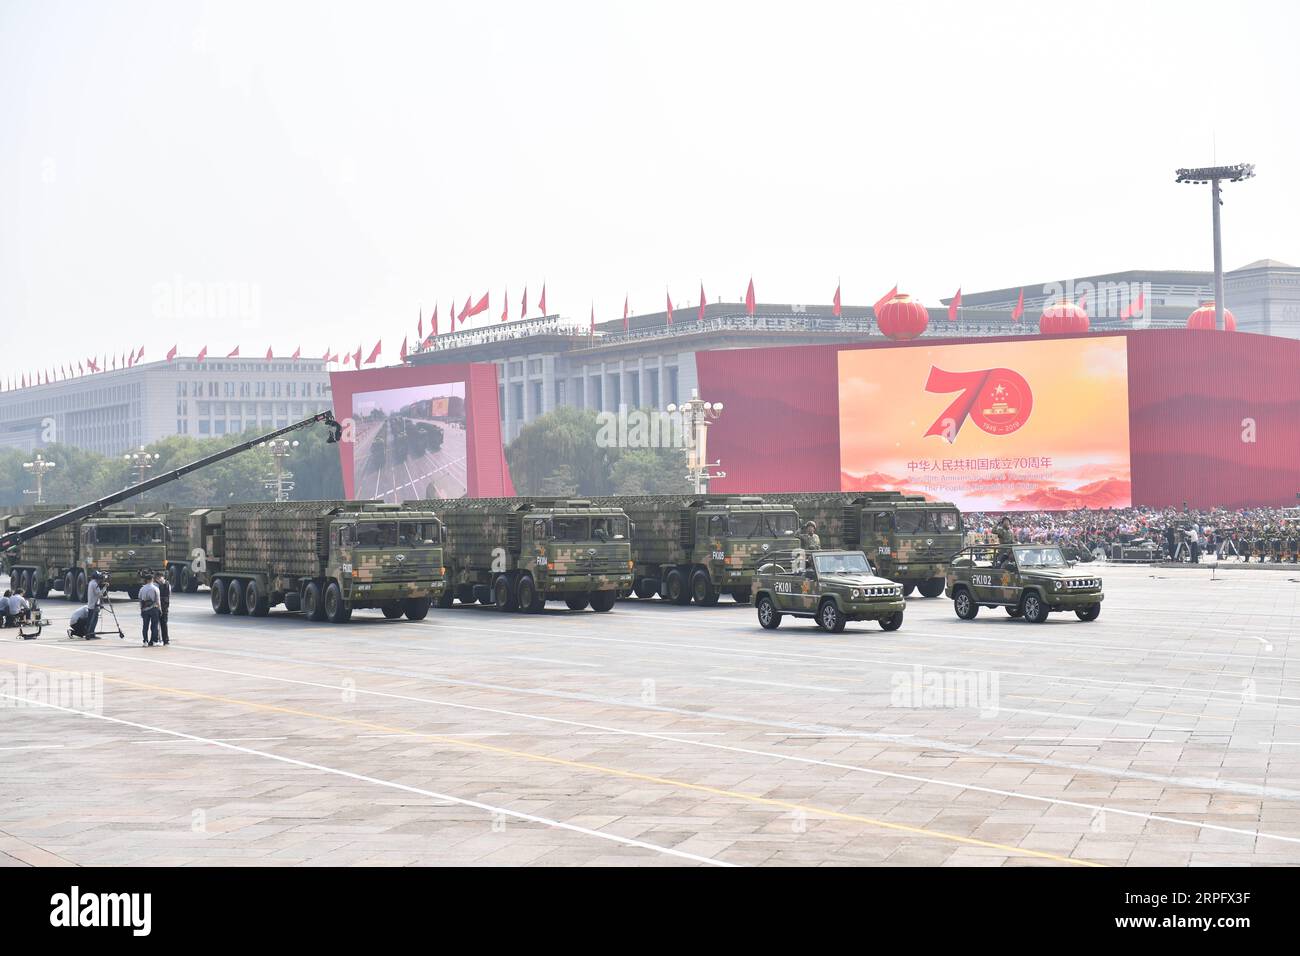 191001 -- BEIJING, le 1 octobre 2019 -- Une formation de radars d'alerte précoce participe à un défilé militaire lors des célébrations marquant le 70e anniversaire de la fondation de la République populaire de Chine RPC sur la place Tian anmen à Beijing, capitale de la Chine, le 1 octobre 2019. PRC70YearsCHINA-BEIJING-FÊTE NATIONALE CN LixGa PUBLICATIONxNOTxINxCHN Banque D'Images